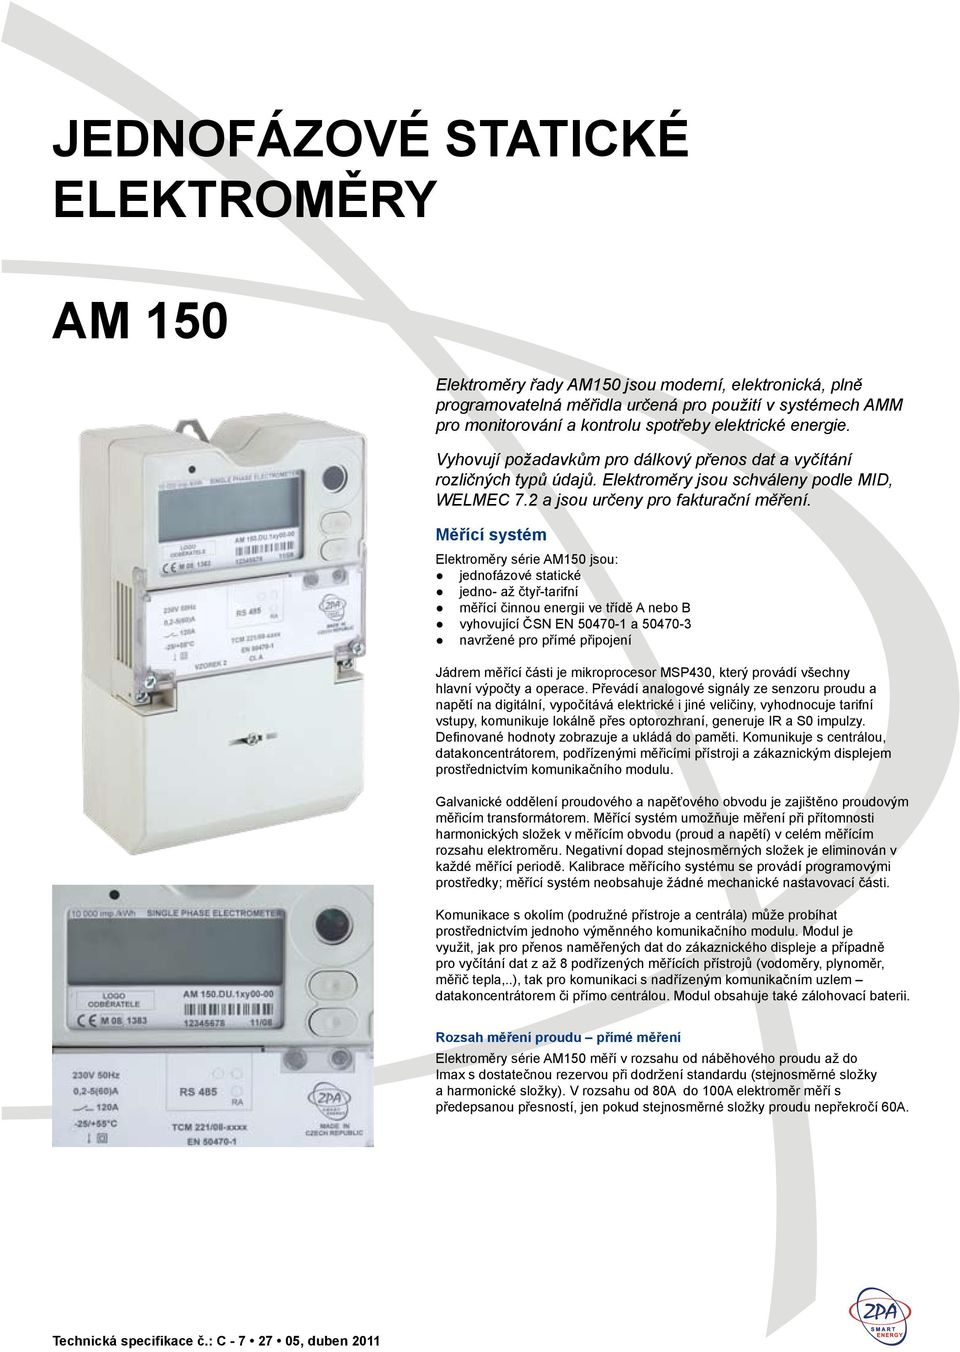 Měřící systém Elektroměry série AM150 jsou: jednofázové statické jedno- až čtyř-tarifní měřící činnou energii ve třídě A nebo B vyhovující ČSN EN 50470-1 a 50470-3 navržené pro přímé připojení Jádrem